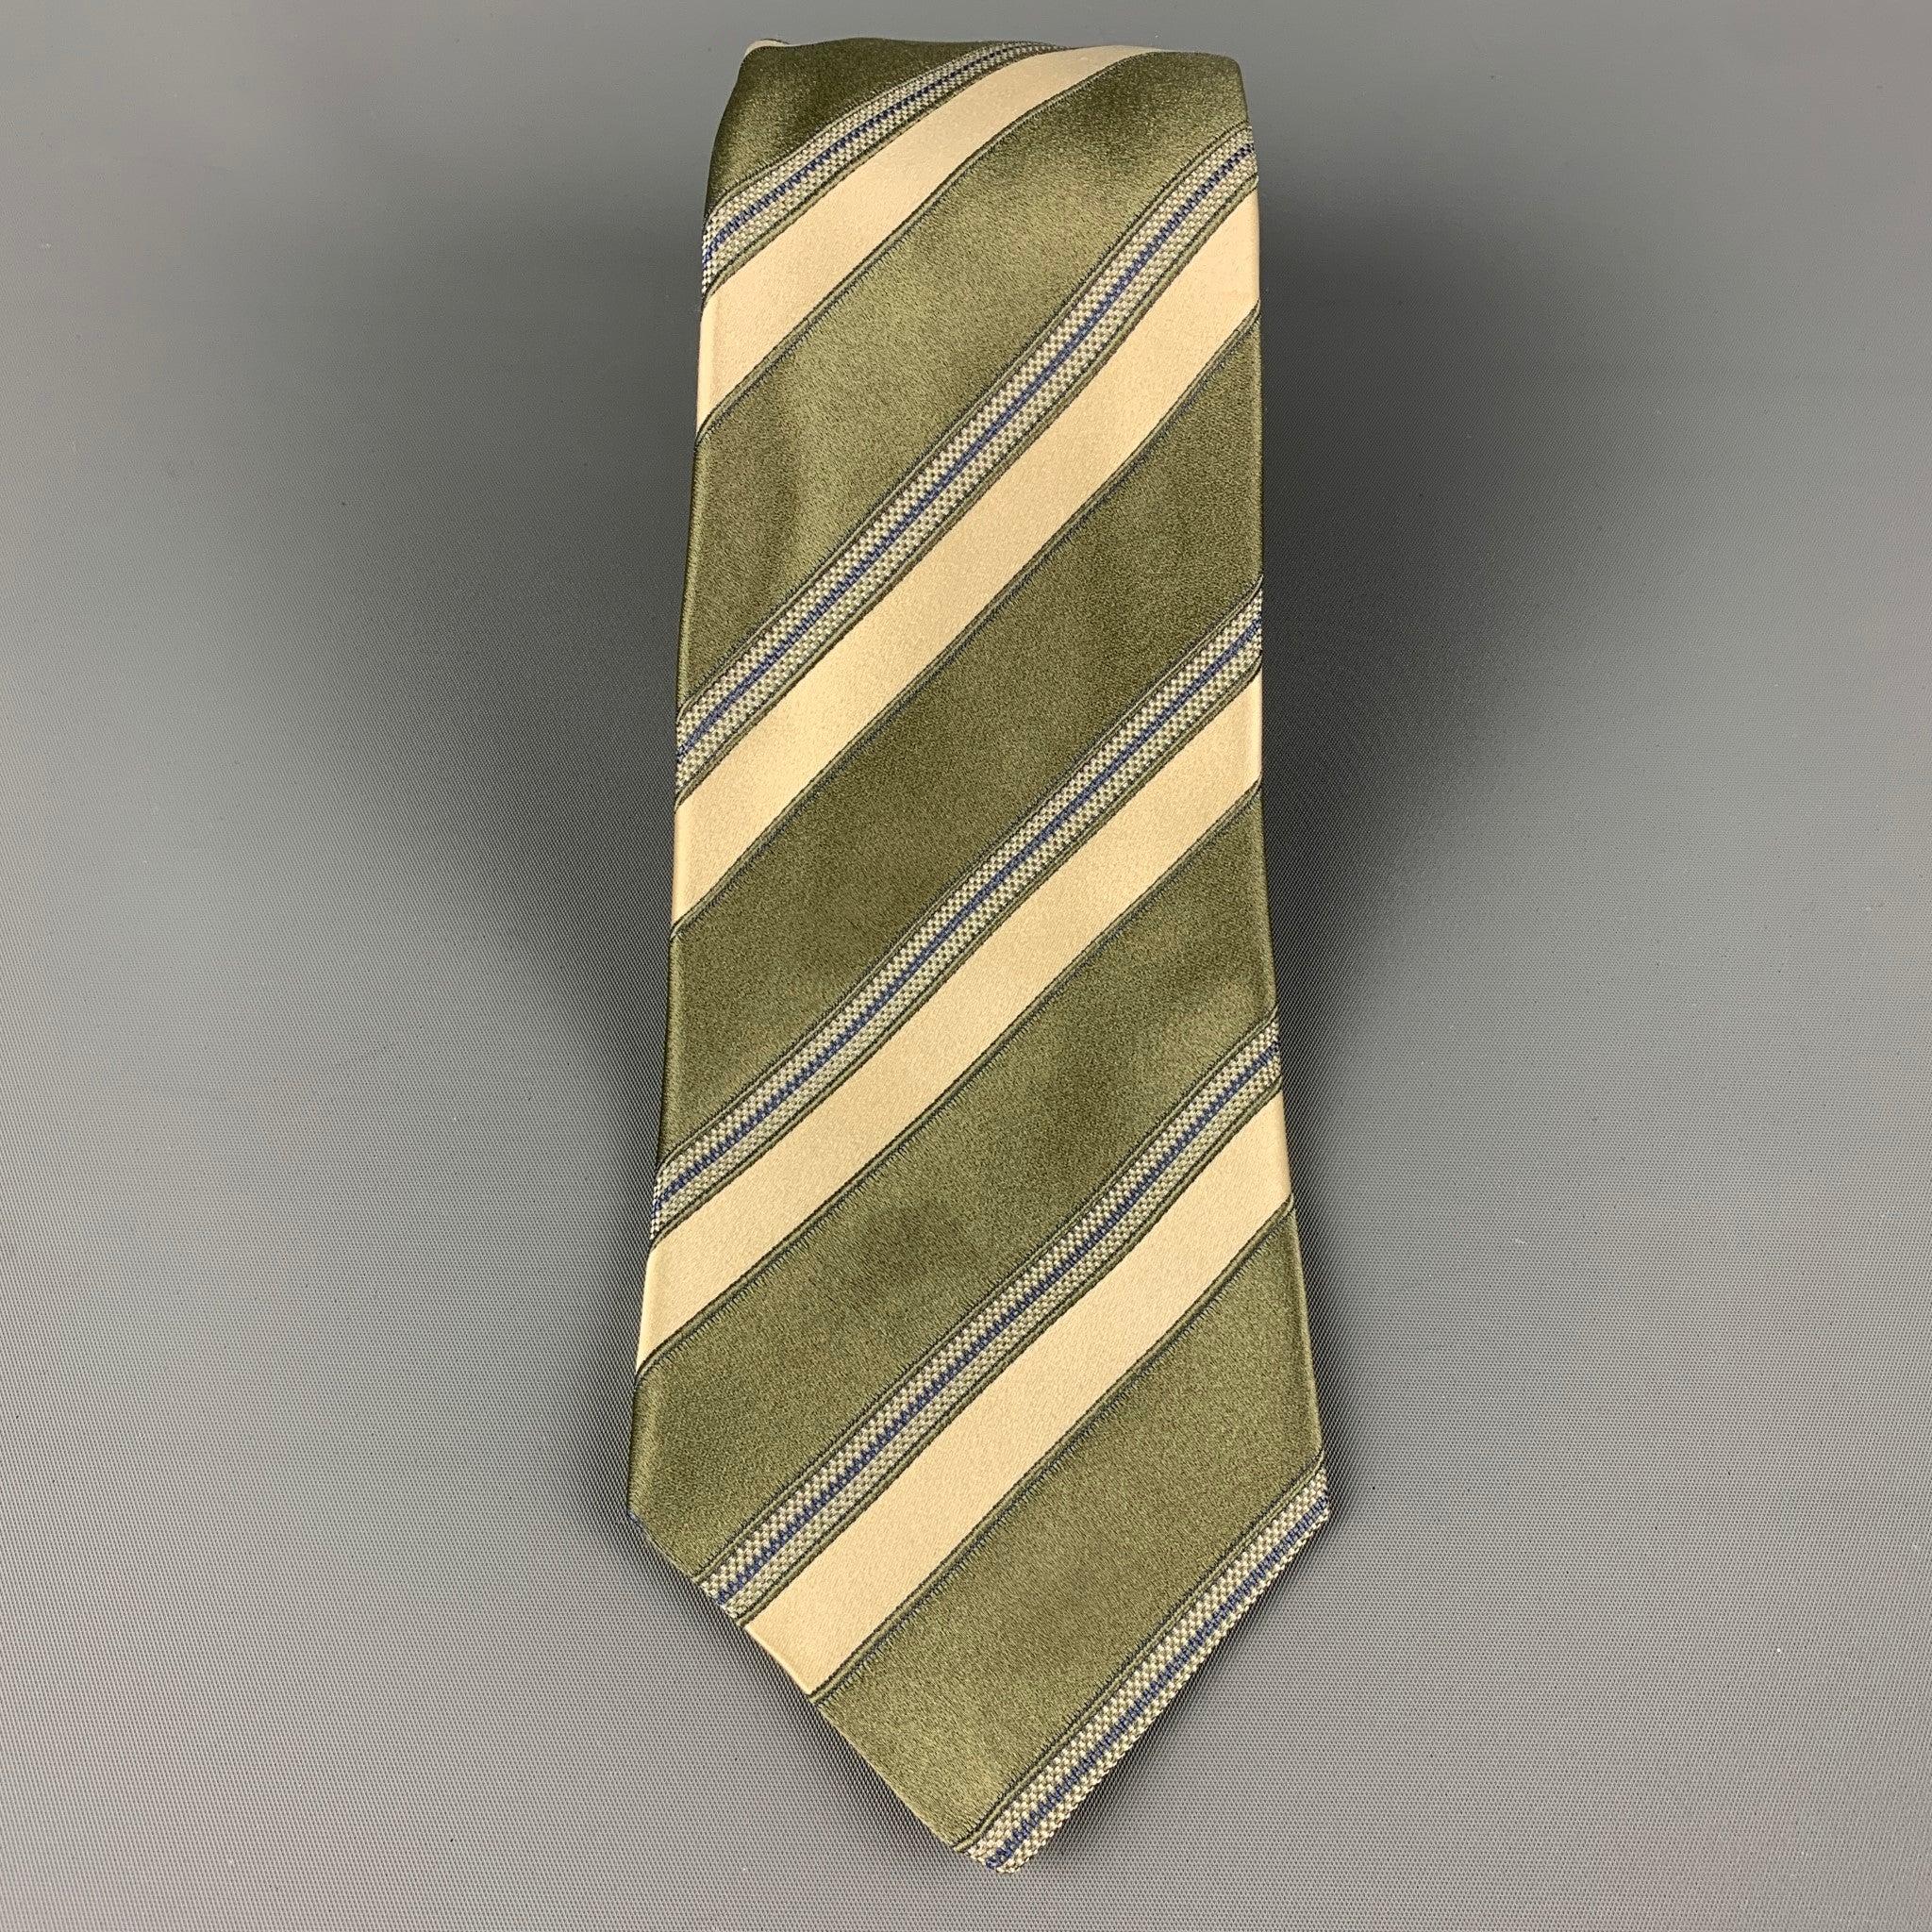 KITON Krawatte aus moosgelber Seide mit diagonalem Streifendruck. Hergestellt in Italien. Guter Pre-Owned Zustand. Leichte Verfärbung. So wie es ist Breite: 3,75 Zoll  Länge: 62 Zoll 


  
  
 
Sui Generis-Referenz: 120377
Kategorie: Krawatte
Mehr